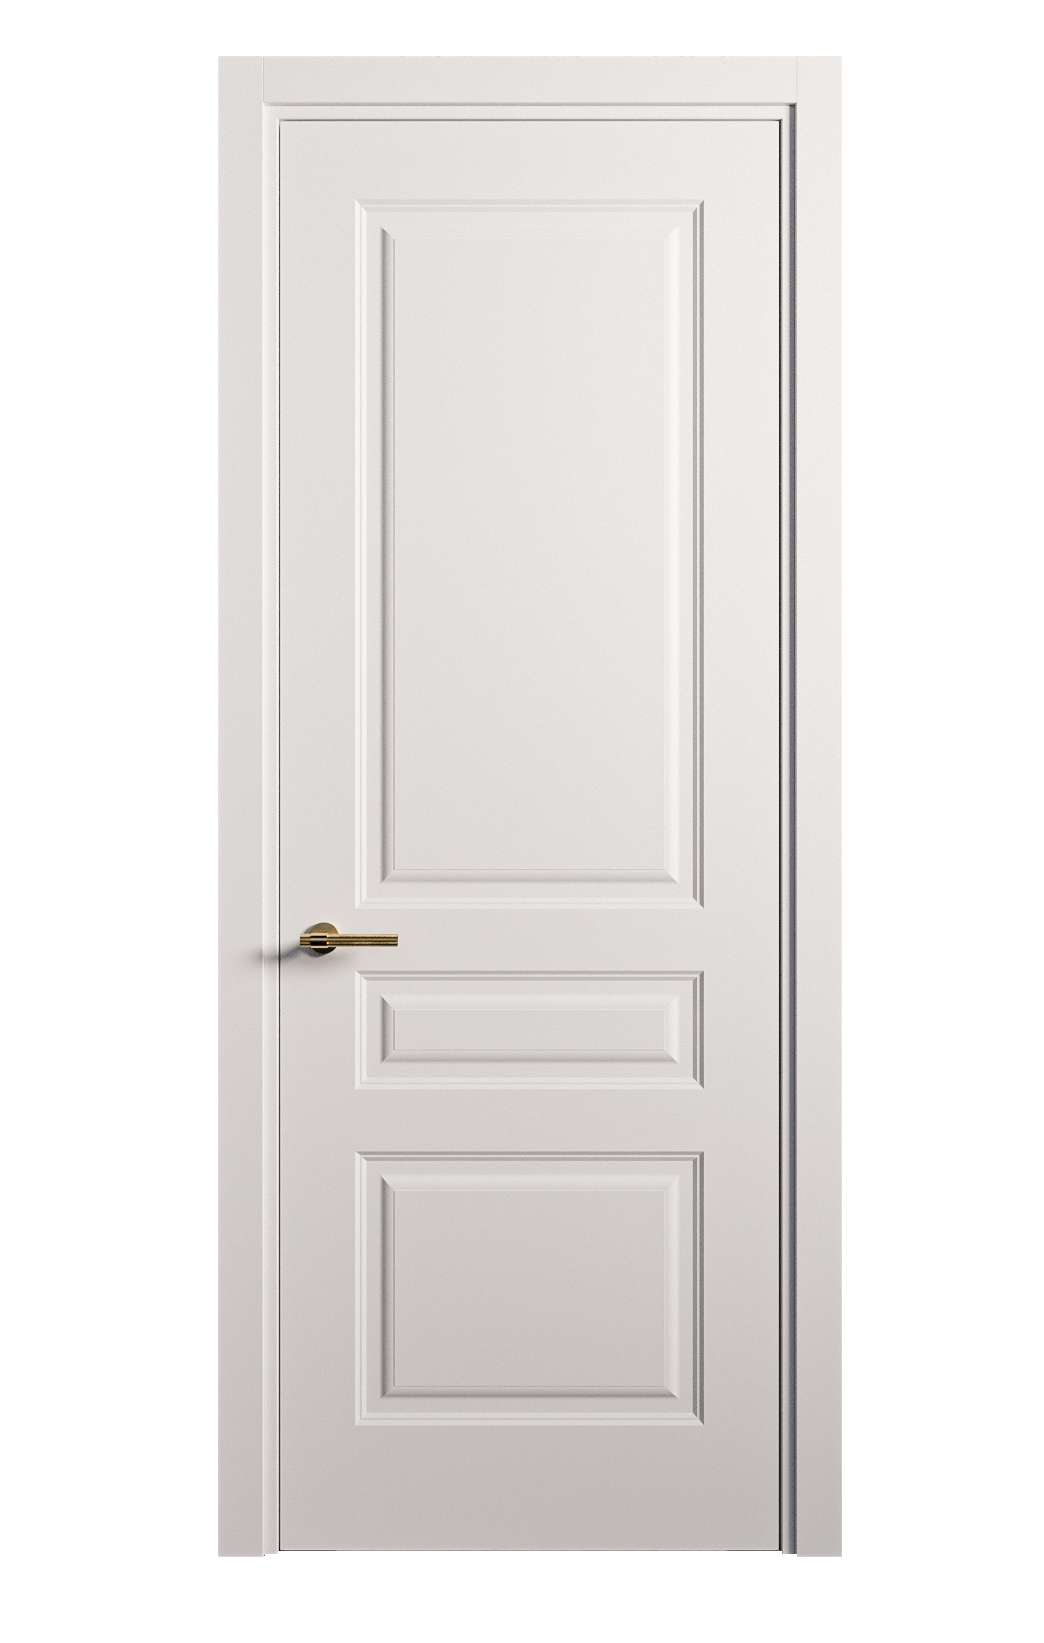 Межкомнатная дверь Вита-2 глухая эмаль ral 9003 26368